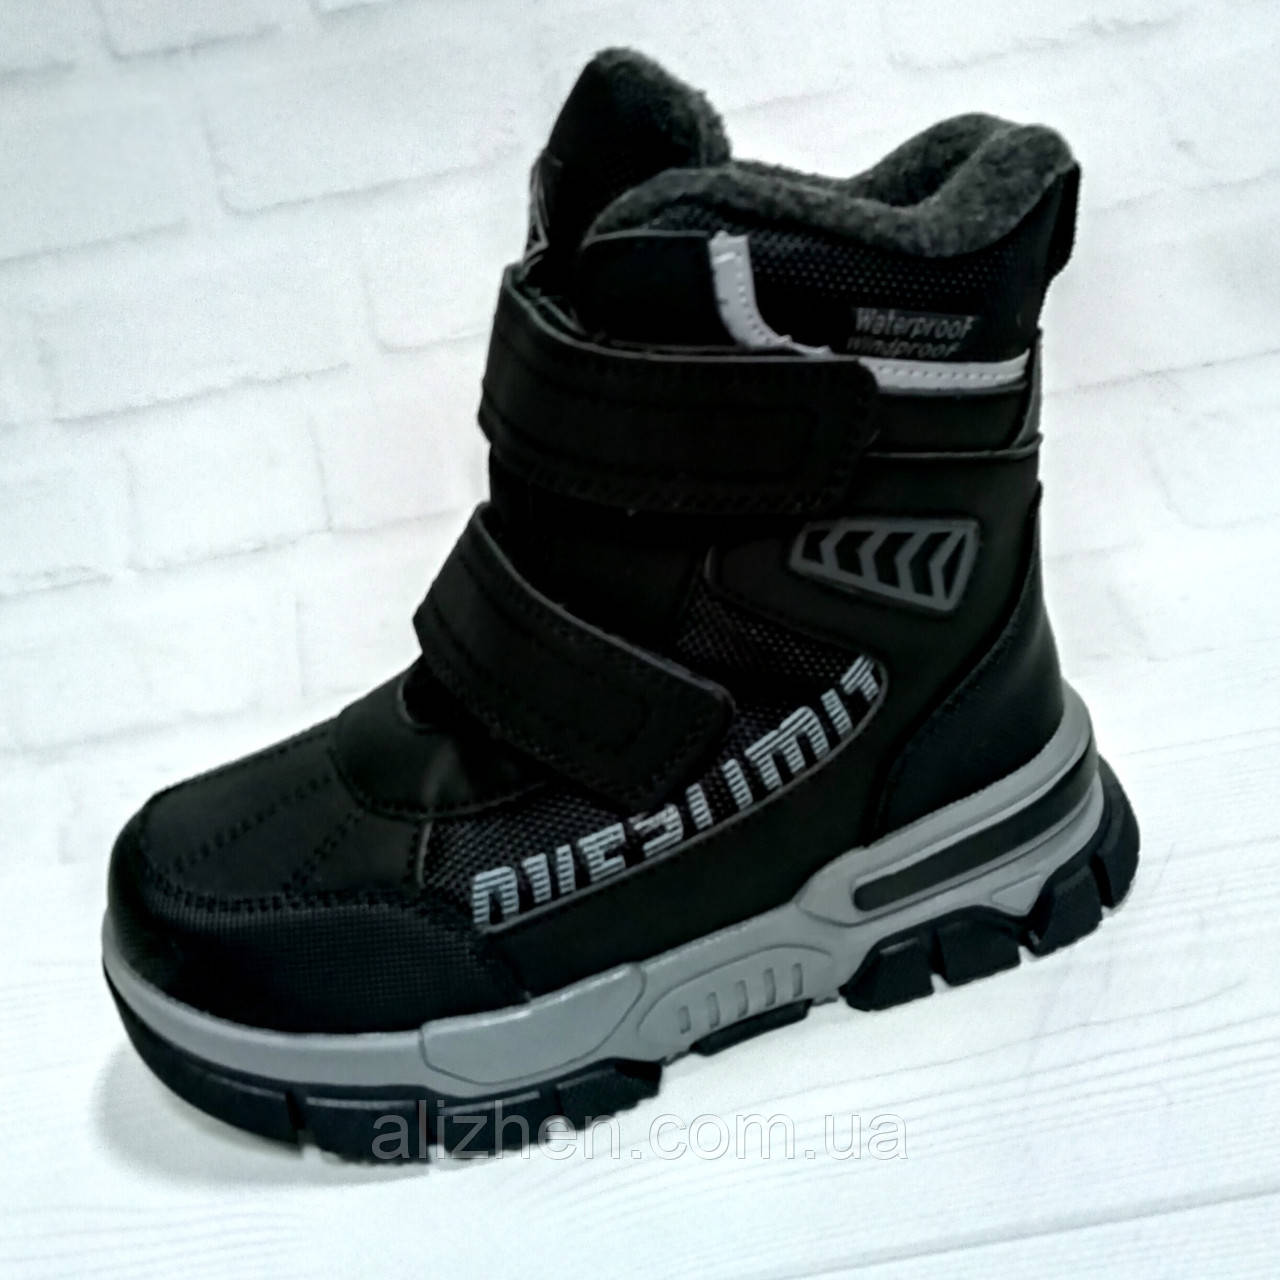 Дитячі зимові черевики, термочеревики для хлопчика тм Tom.M, розміри 27 - 32, чорні.